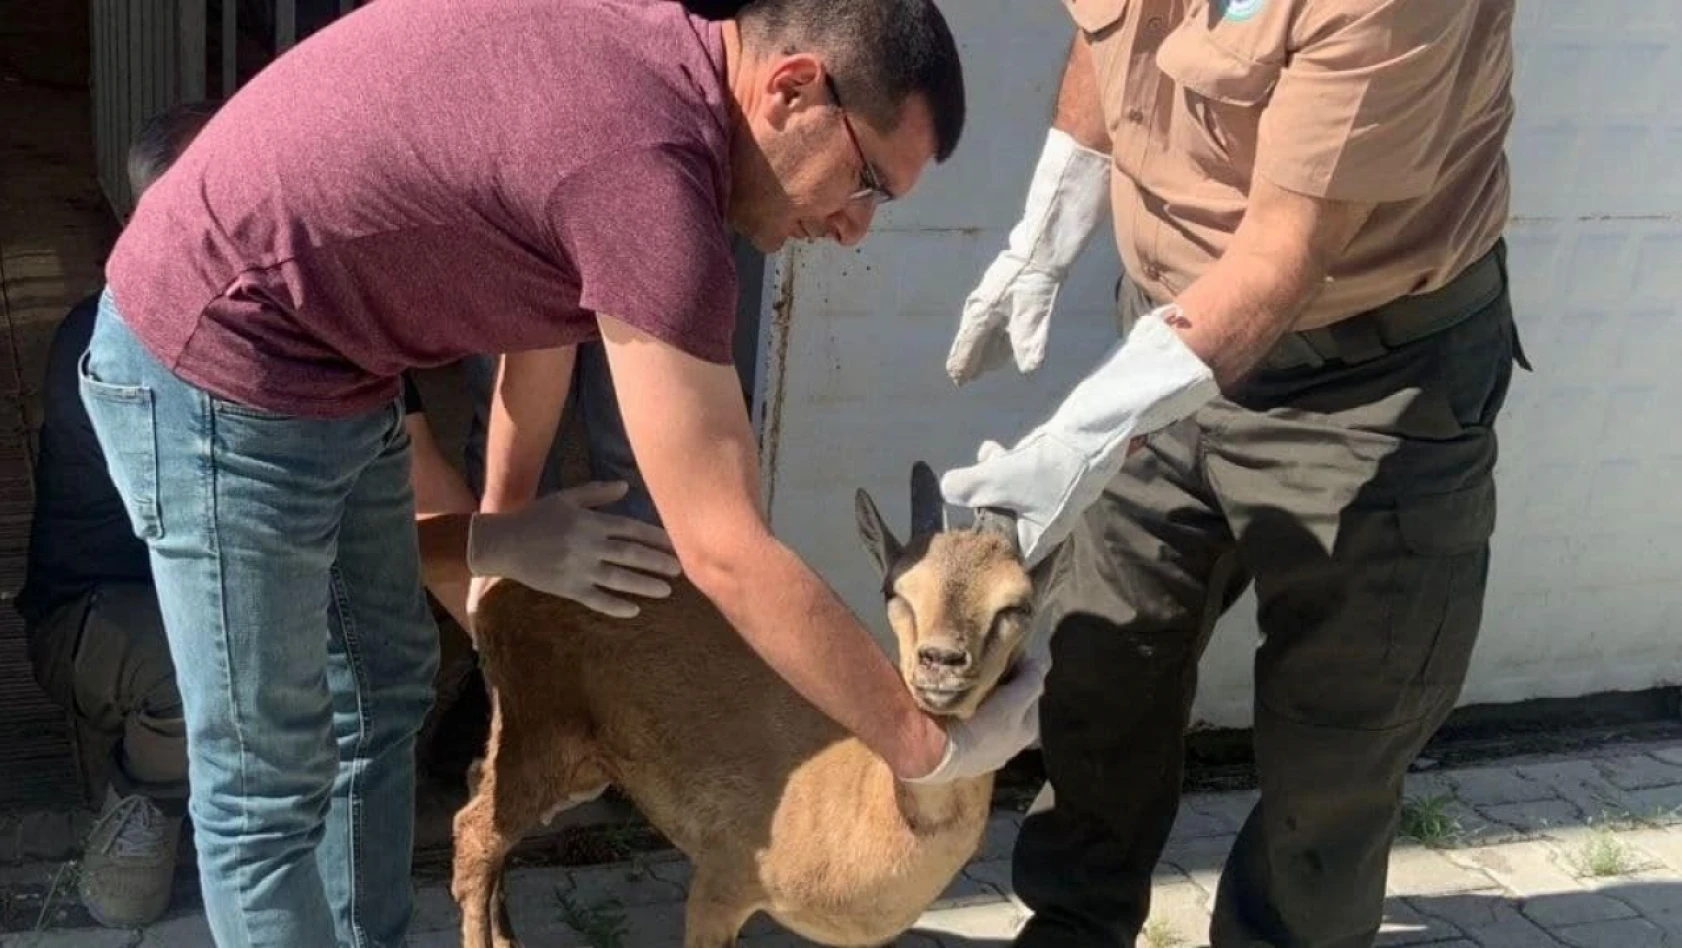 Elazığ'da tedavisi tamamlanan yaban keçisi doğaya bırakıldı